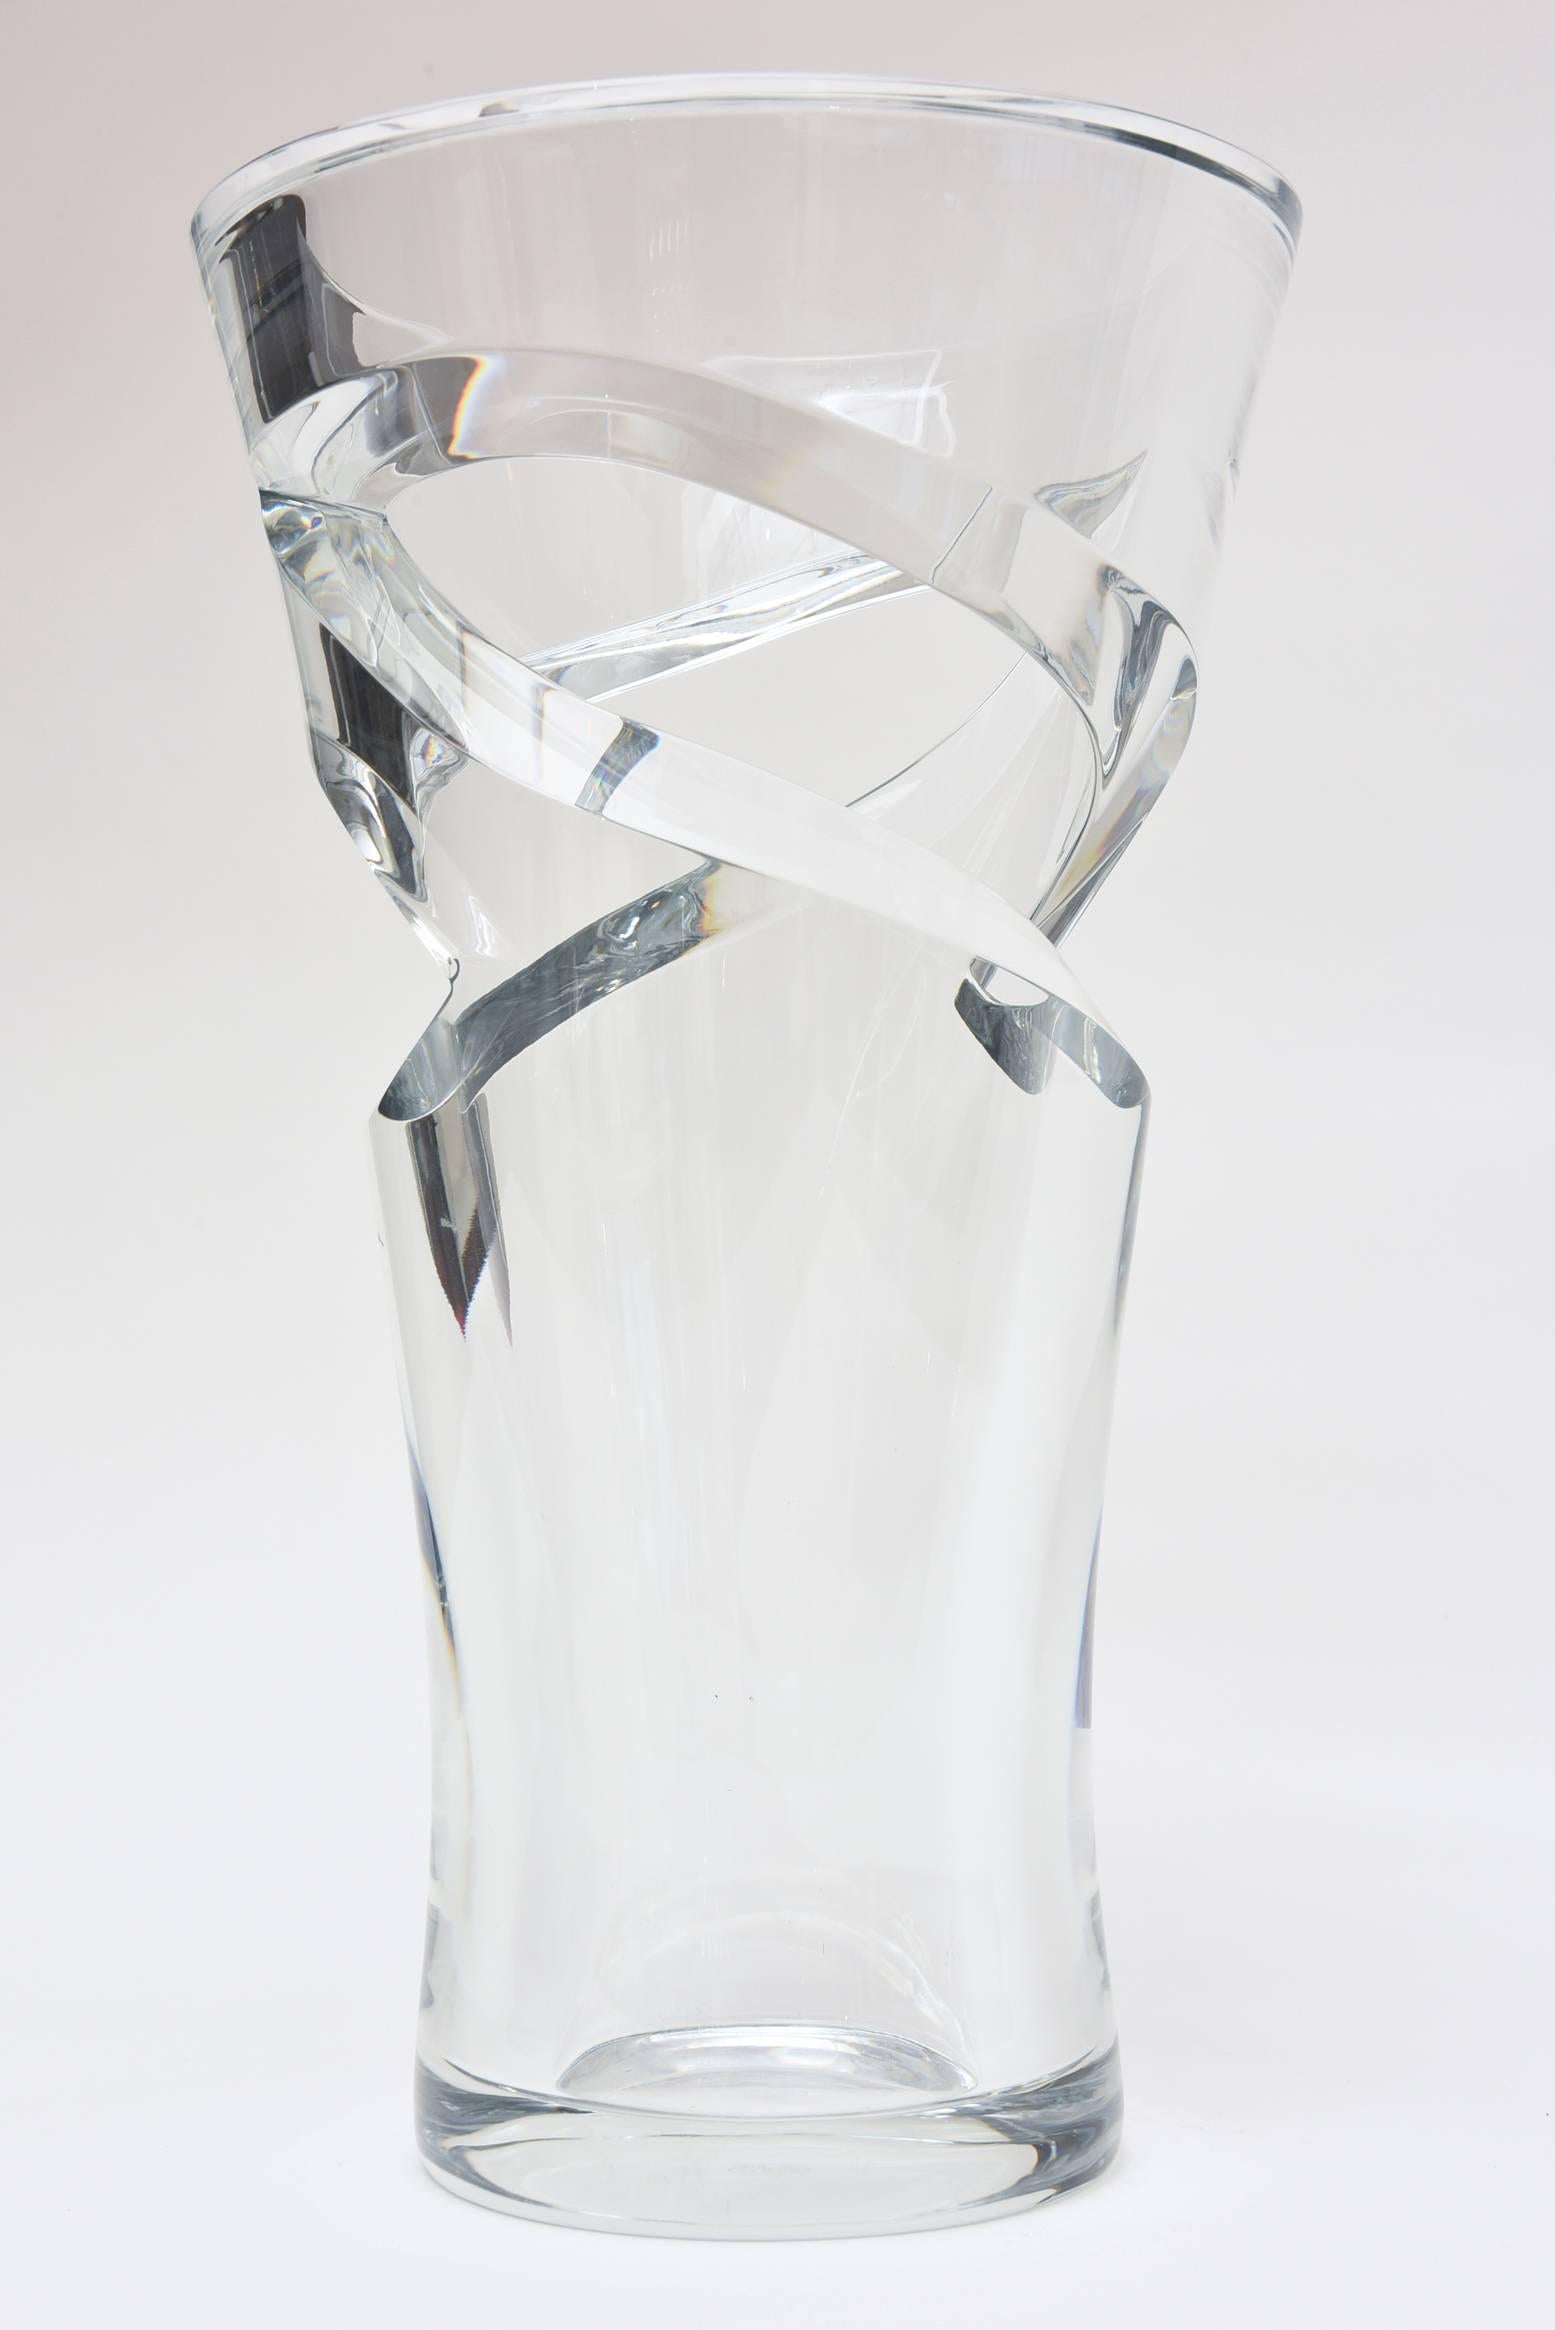 French Sculptural Baccarat Monumental Crystal Modernist Vase